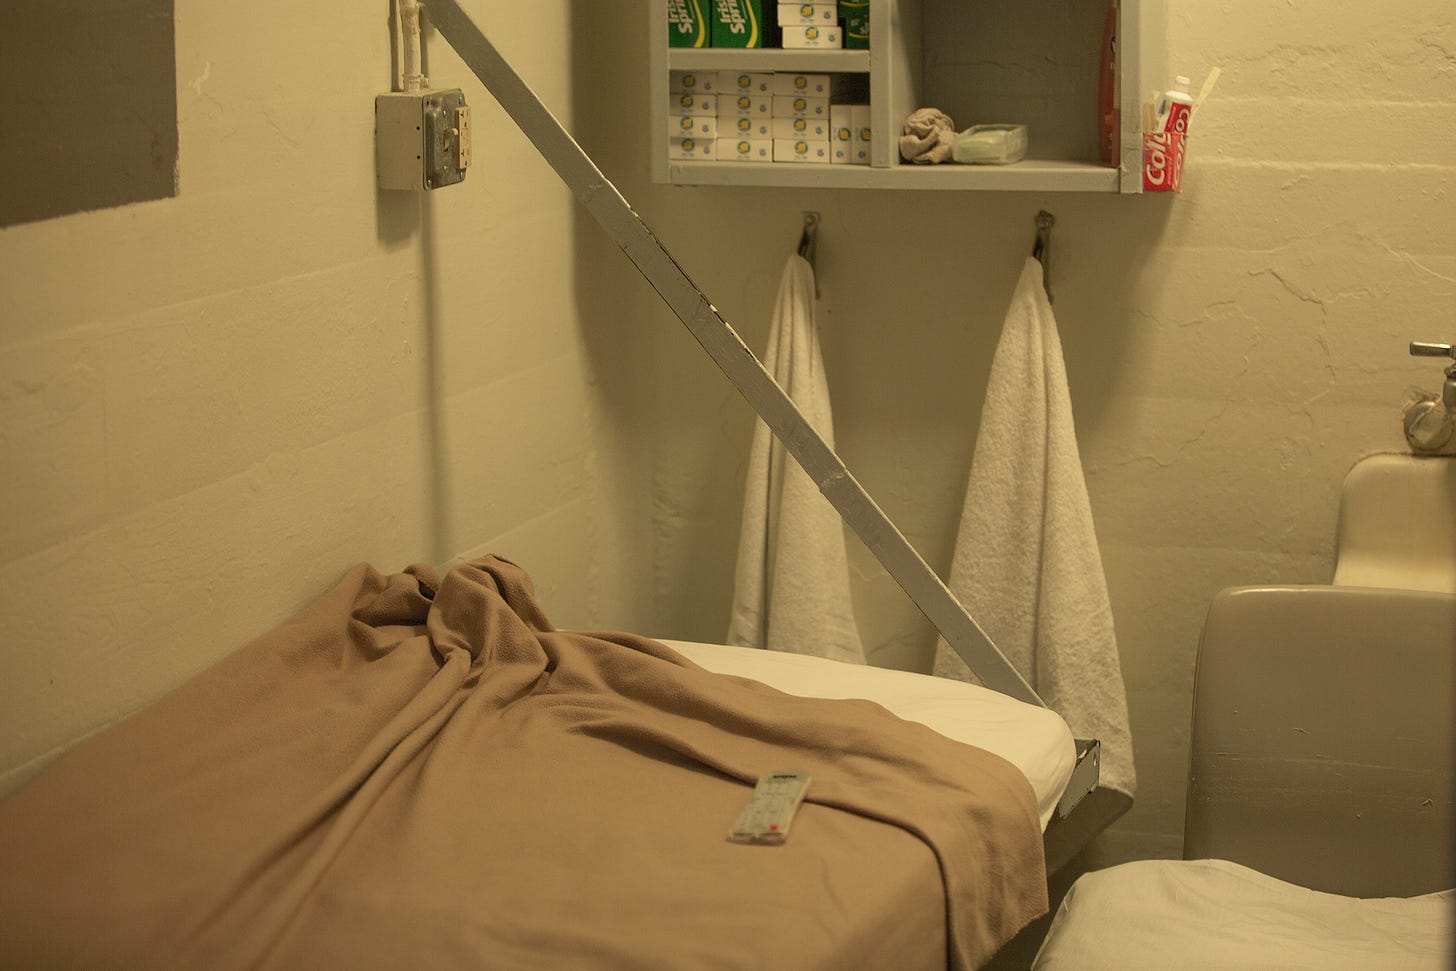 Stillwater state prison cell